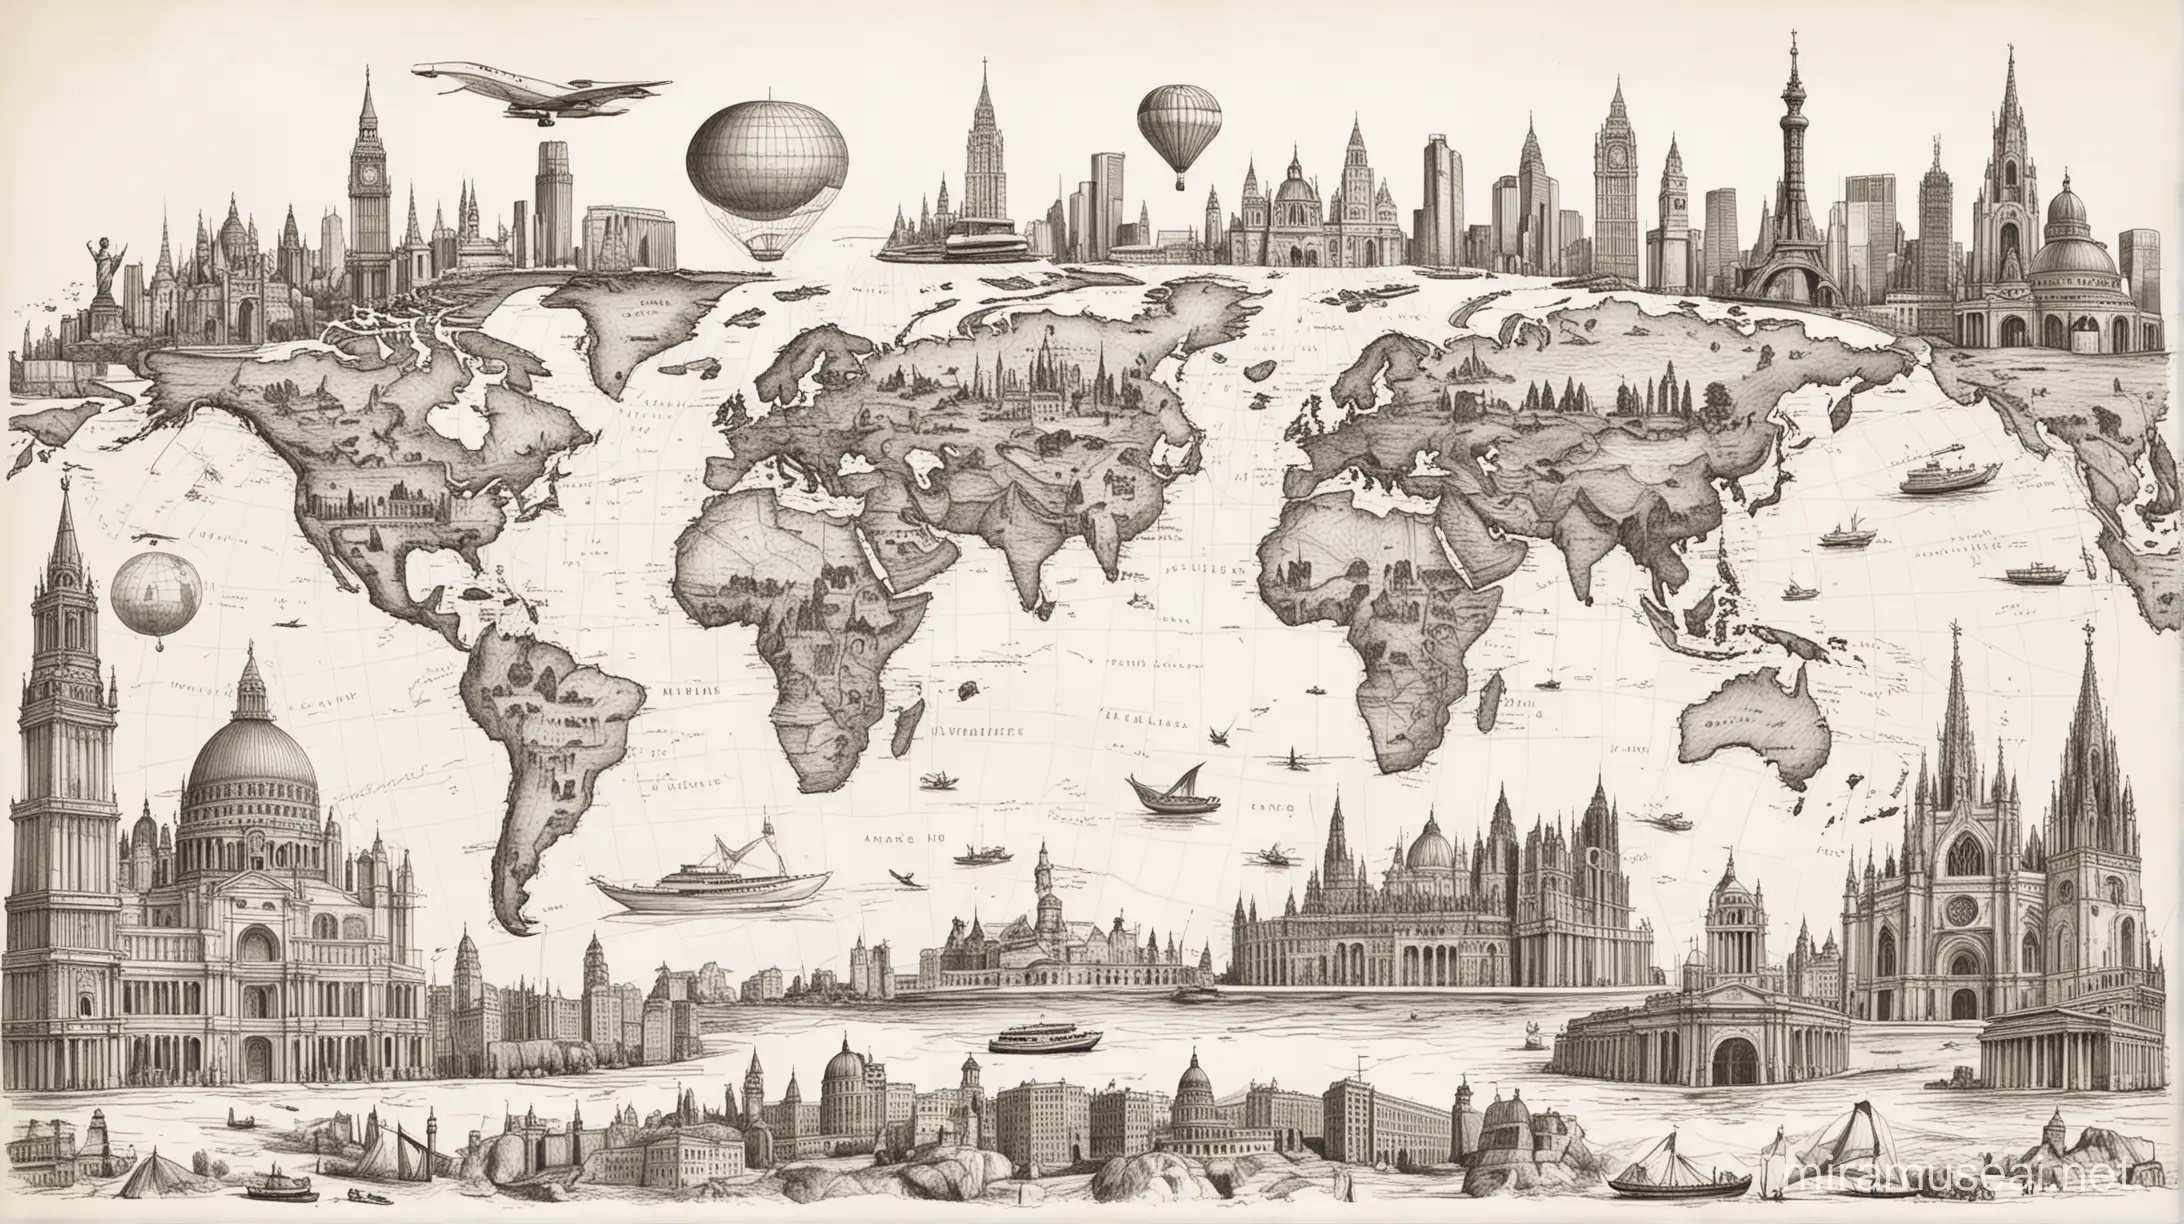 grafika na pierwszym planie znane zabytki i budowle świata. w tle szybki niedbały szkic przedstawiający mapę świata. białe tło